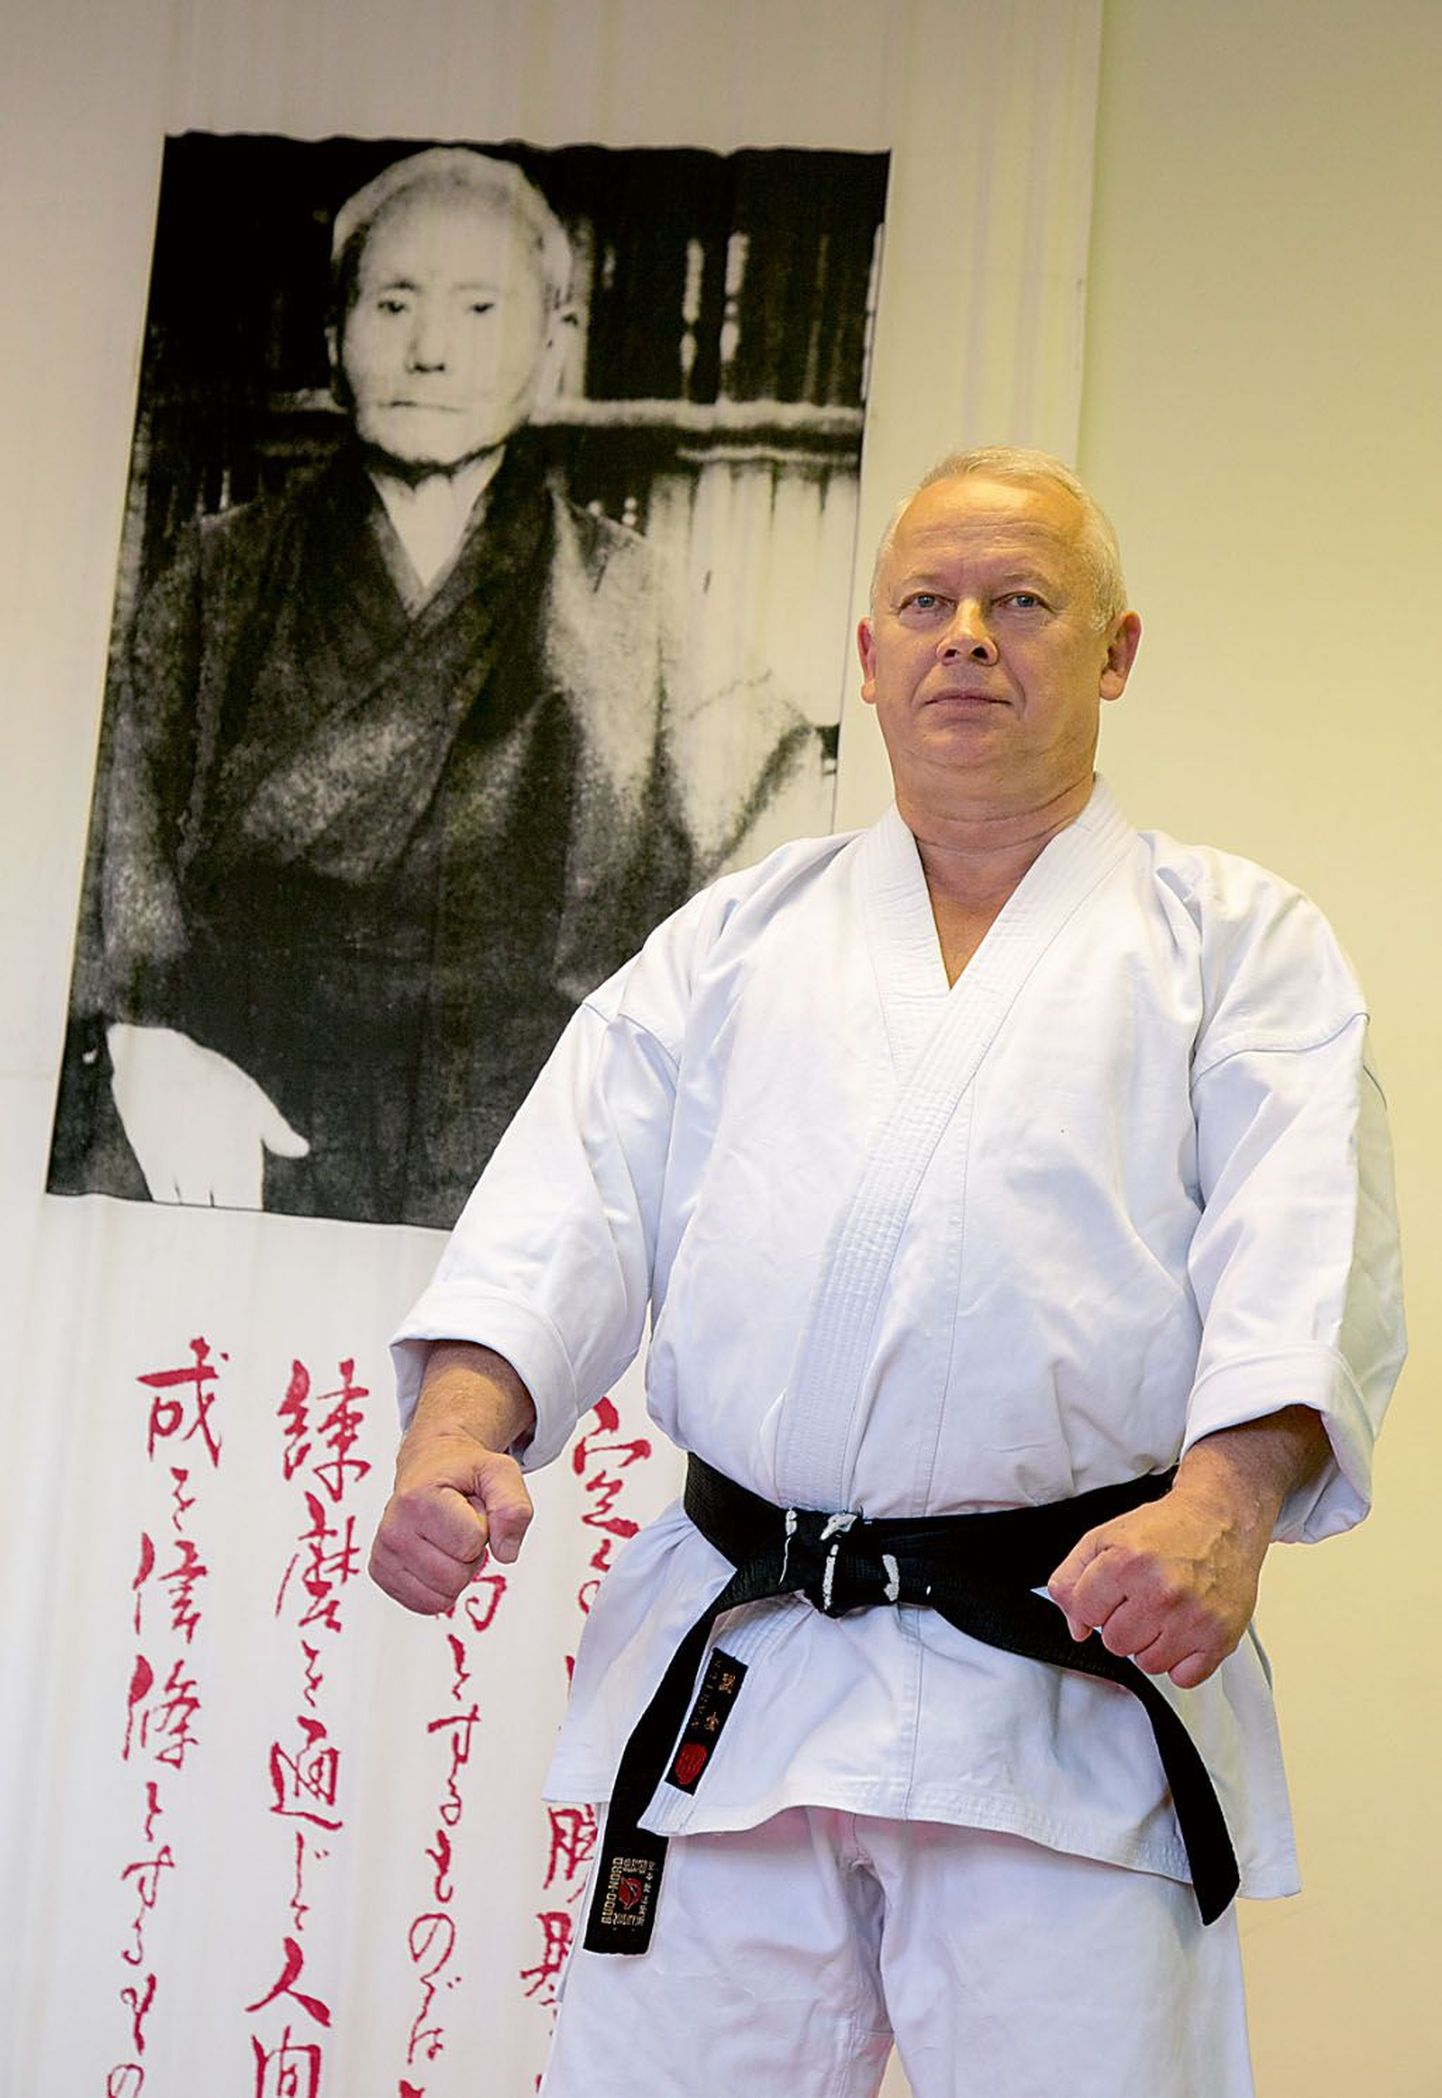 Heino Nõel praktiseerib karate shotokani alastiili, mille asutaja on taustal olev jaapanlane Gichin Funakoshi.